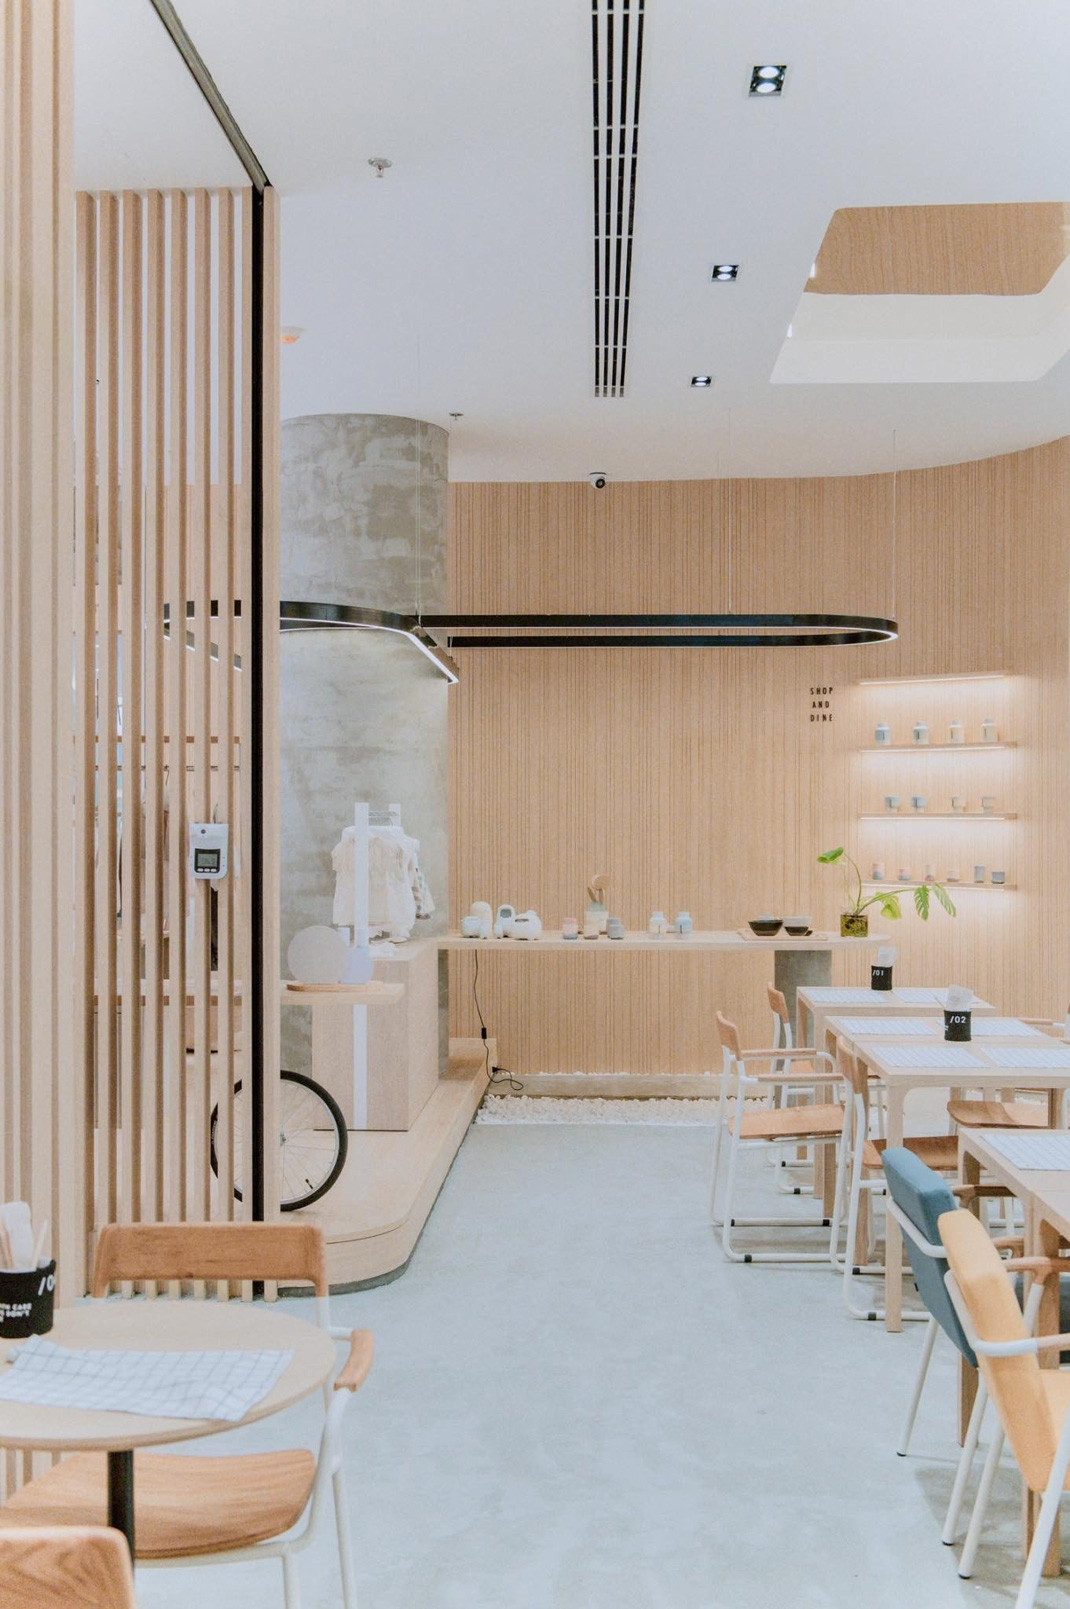 创意融合菜餐厅 泰国 曼谷 融合菜 字母设计 木材 logo设计 vi设计 空间设计